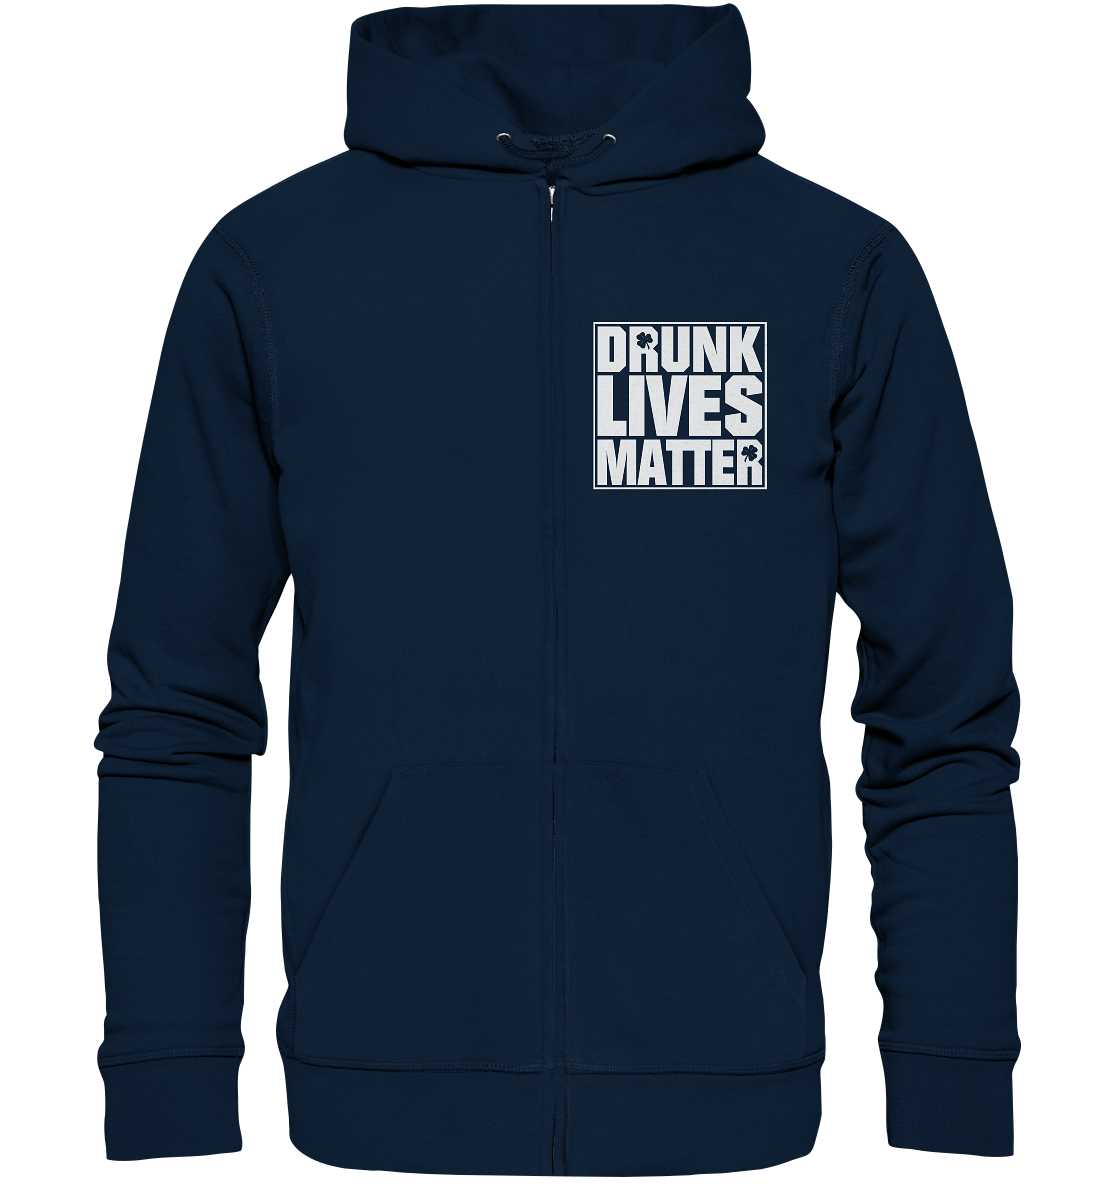 "Drunk Lives Matter" - Organic Zipper